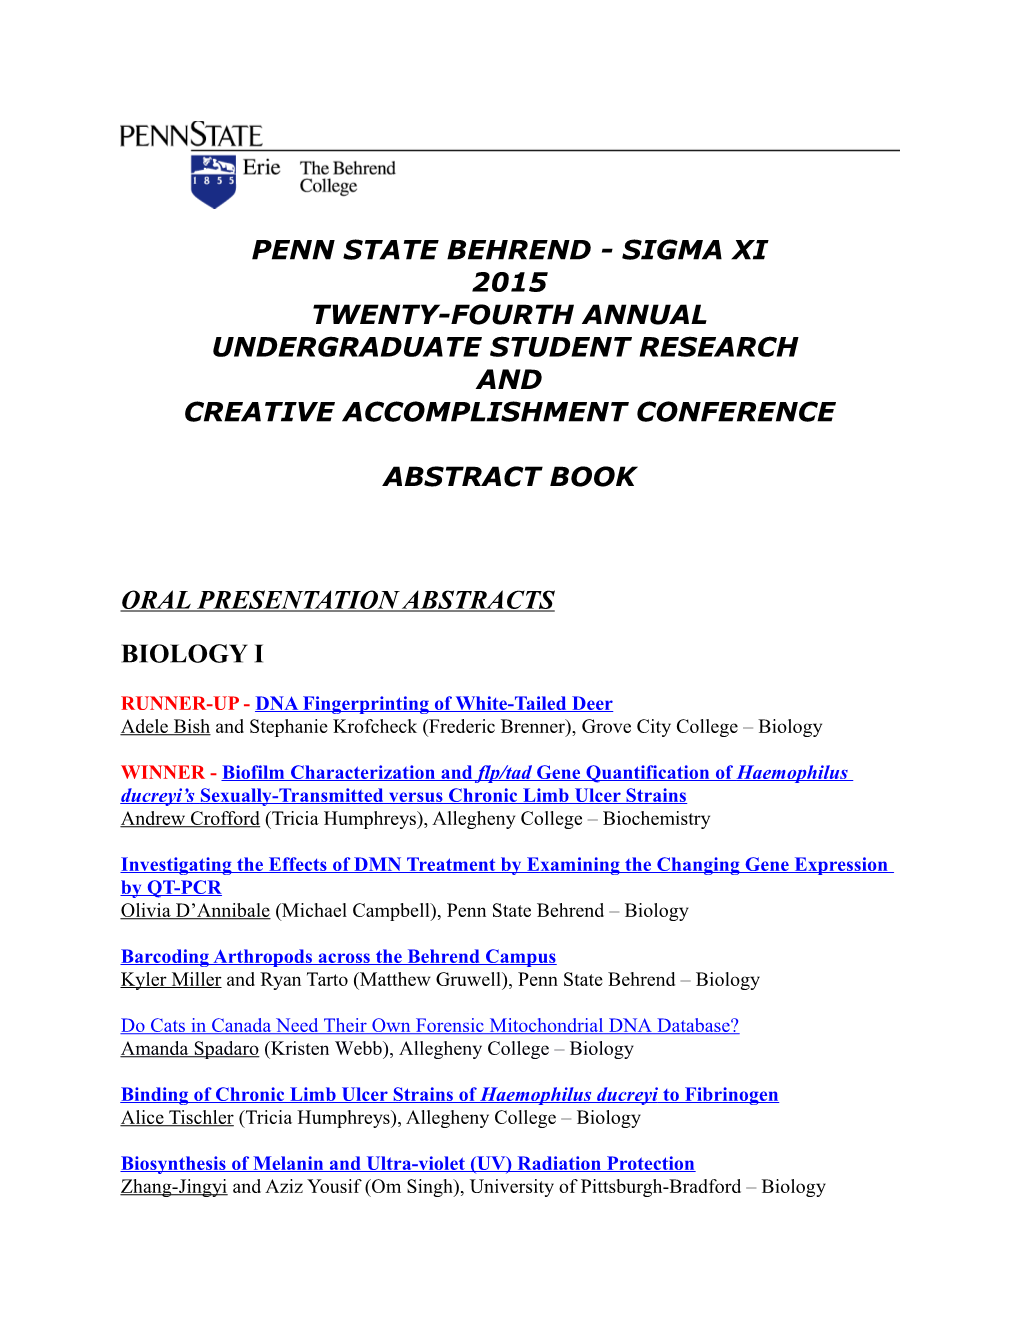 Penn State Behrend - Sigma Xi